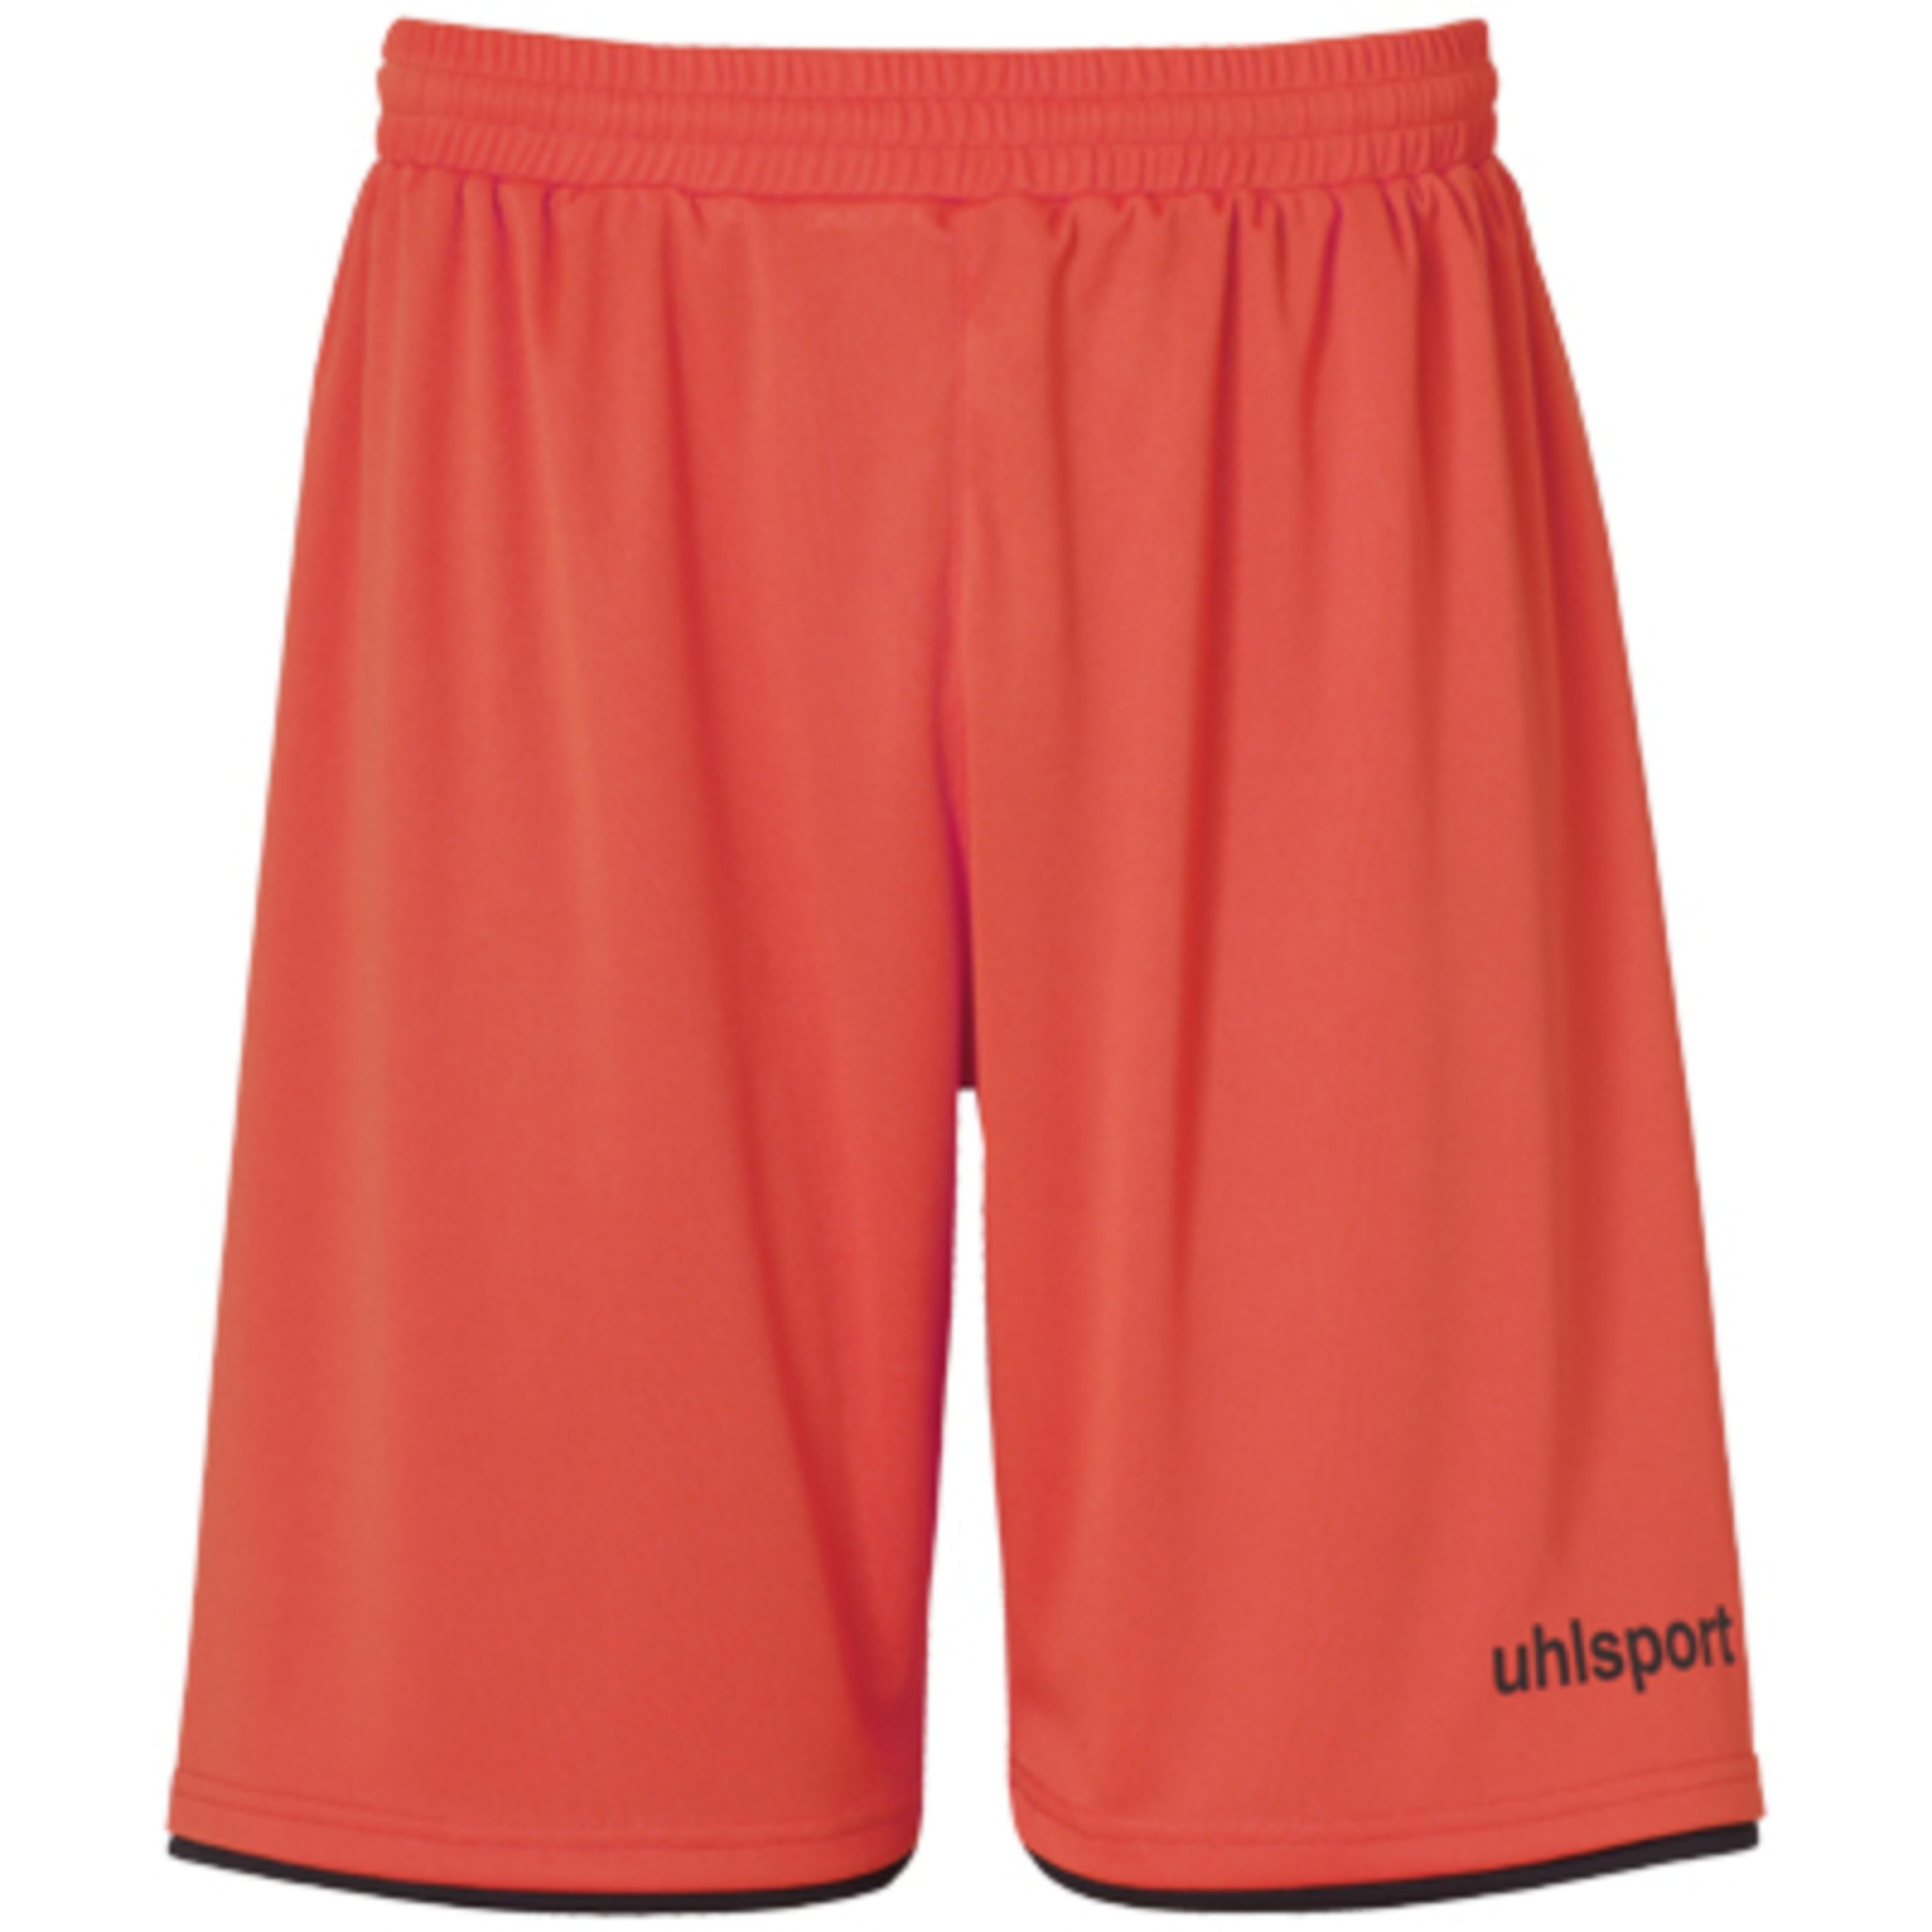 Club Shorts Dynamic Orange/negro Uhlsport